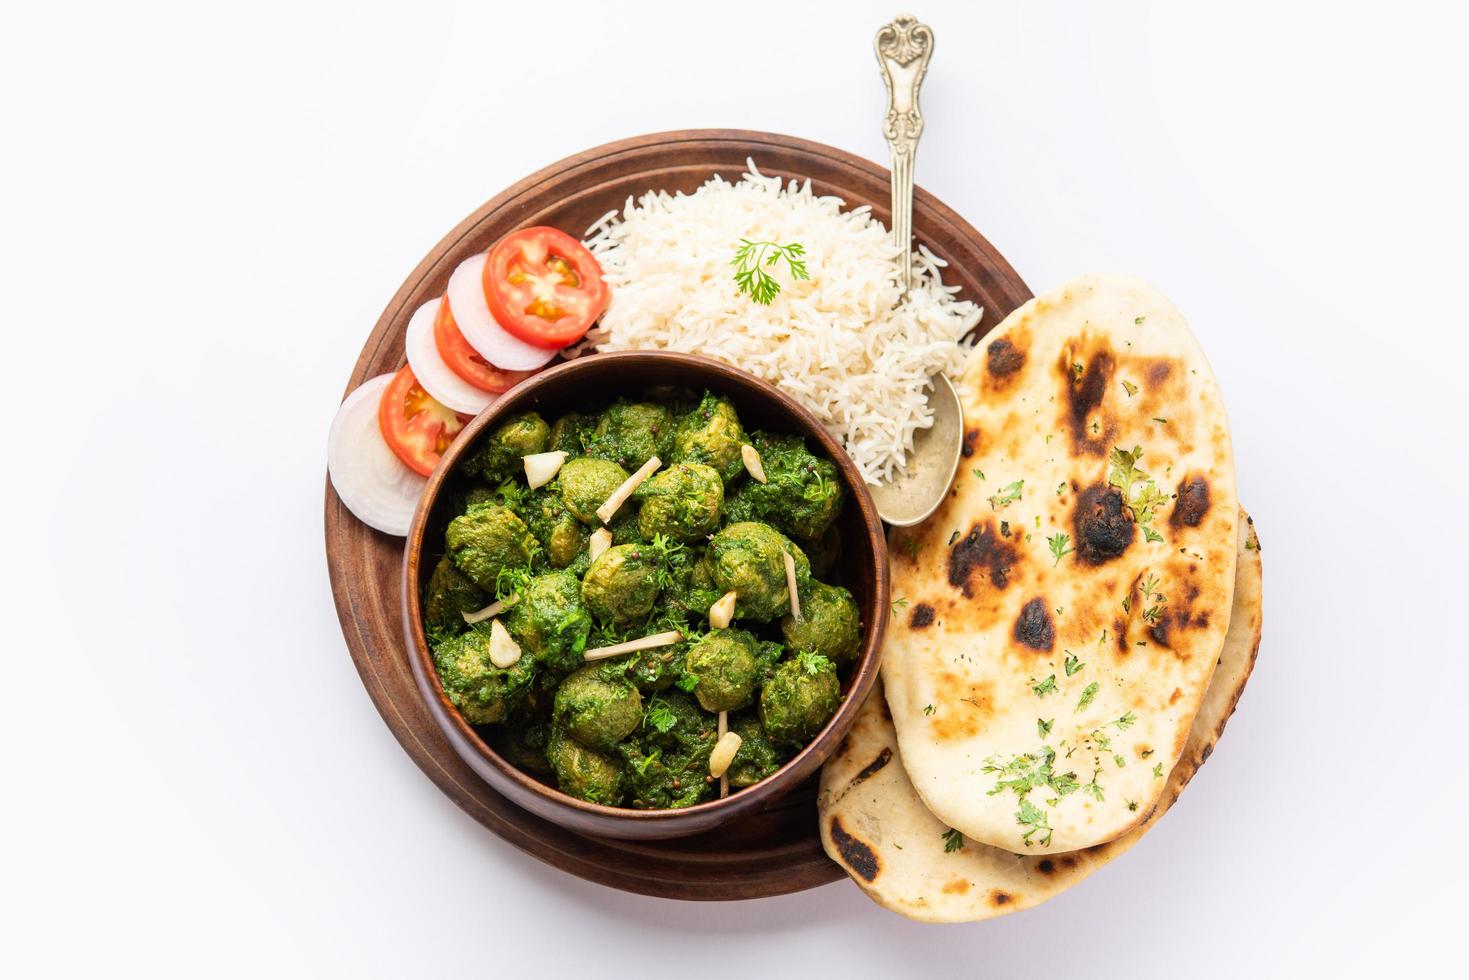 soia pezzi palak curry anche conosciuto come spinaci semi di soia pezzi sabzi o Sabji, salutare indiano cibo foto